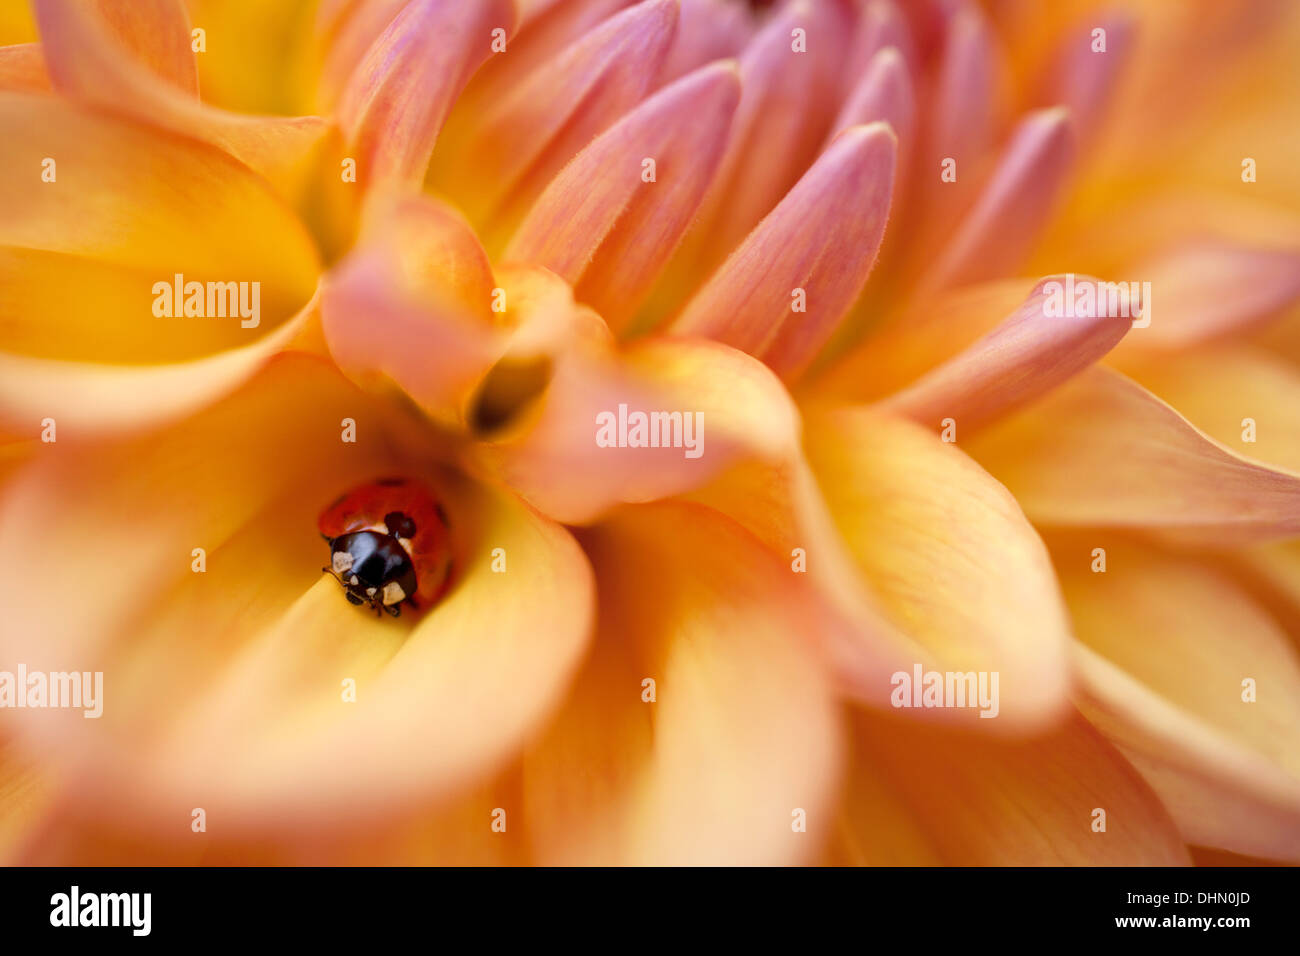 Coccinelle se cachant parmi les pétales d'une fleur Dahlia orange. Banque D'Images